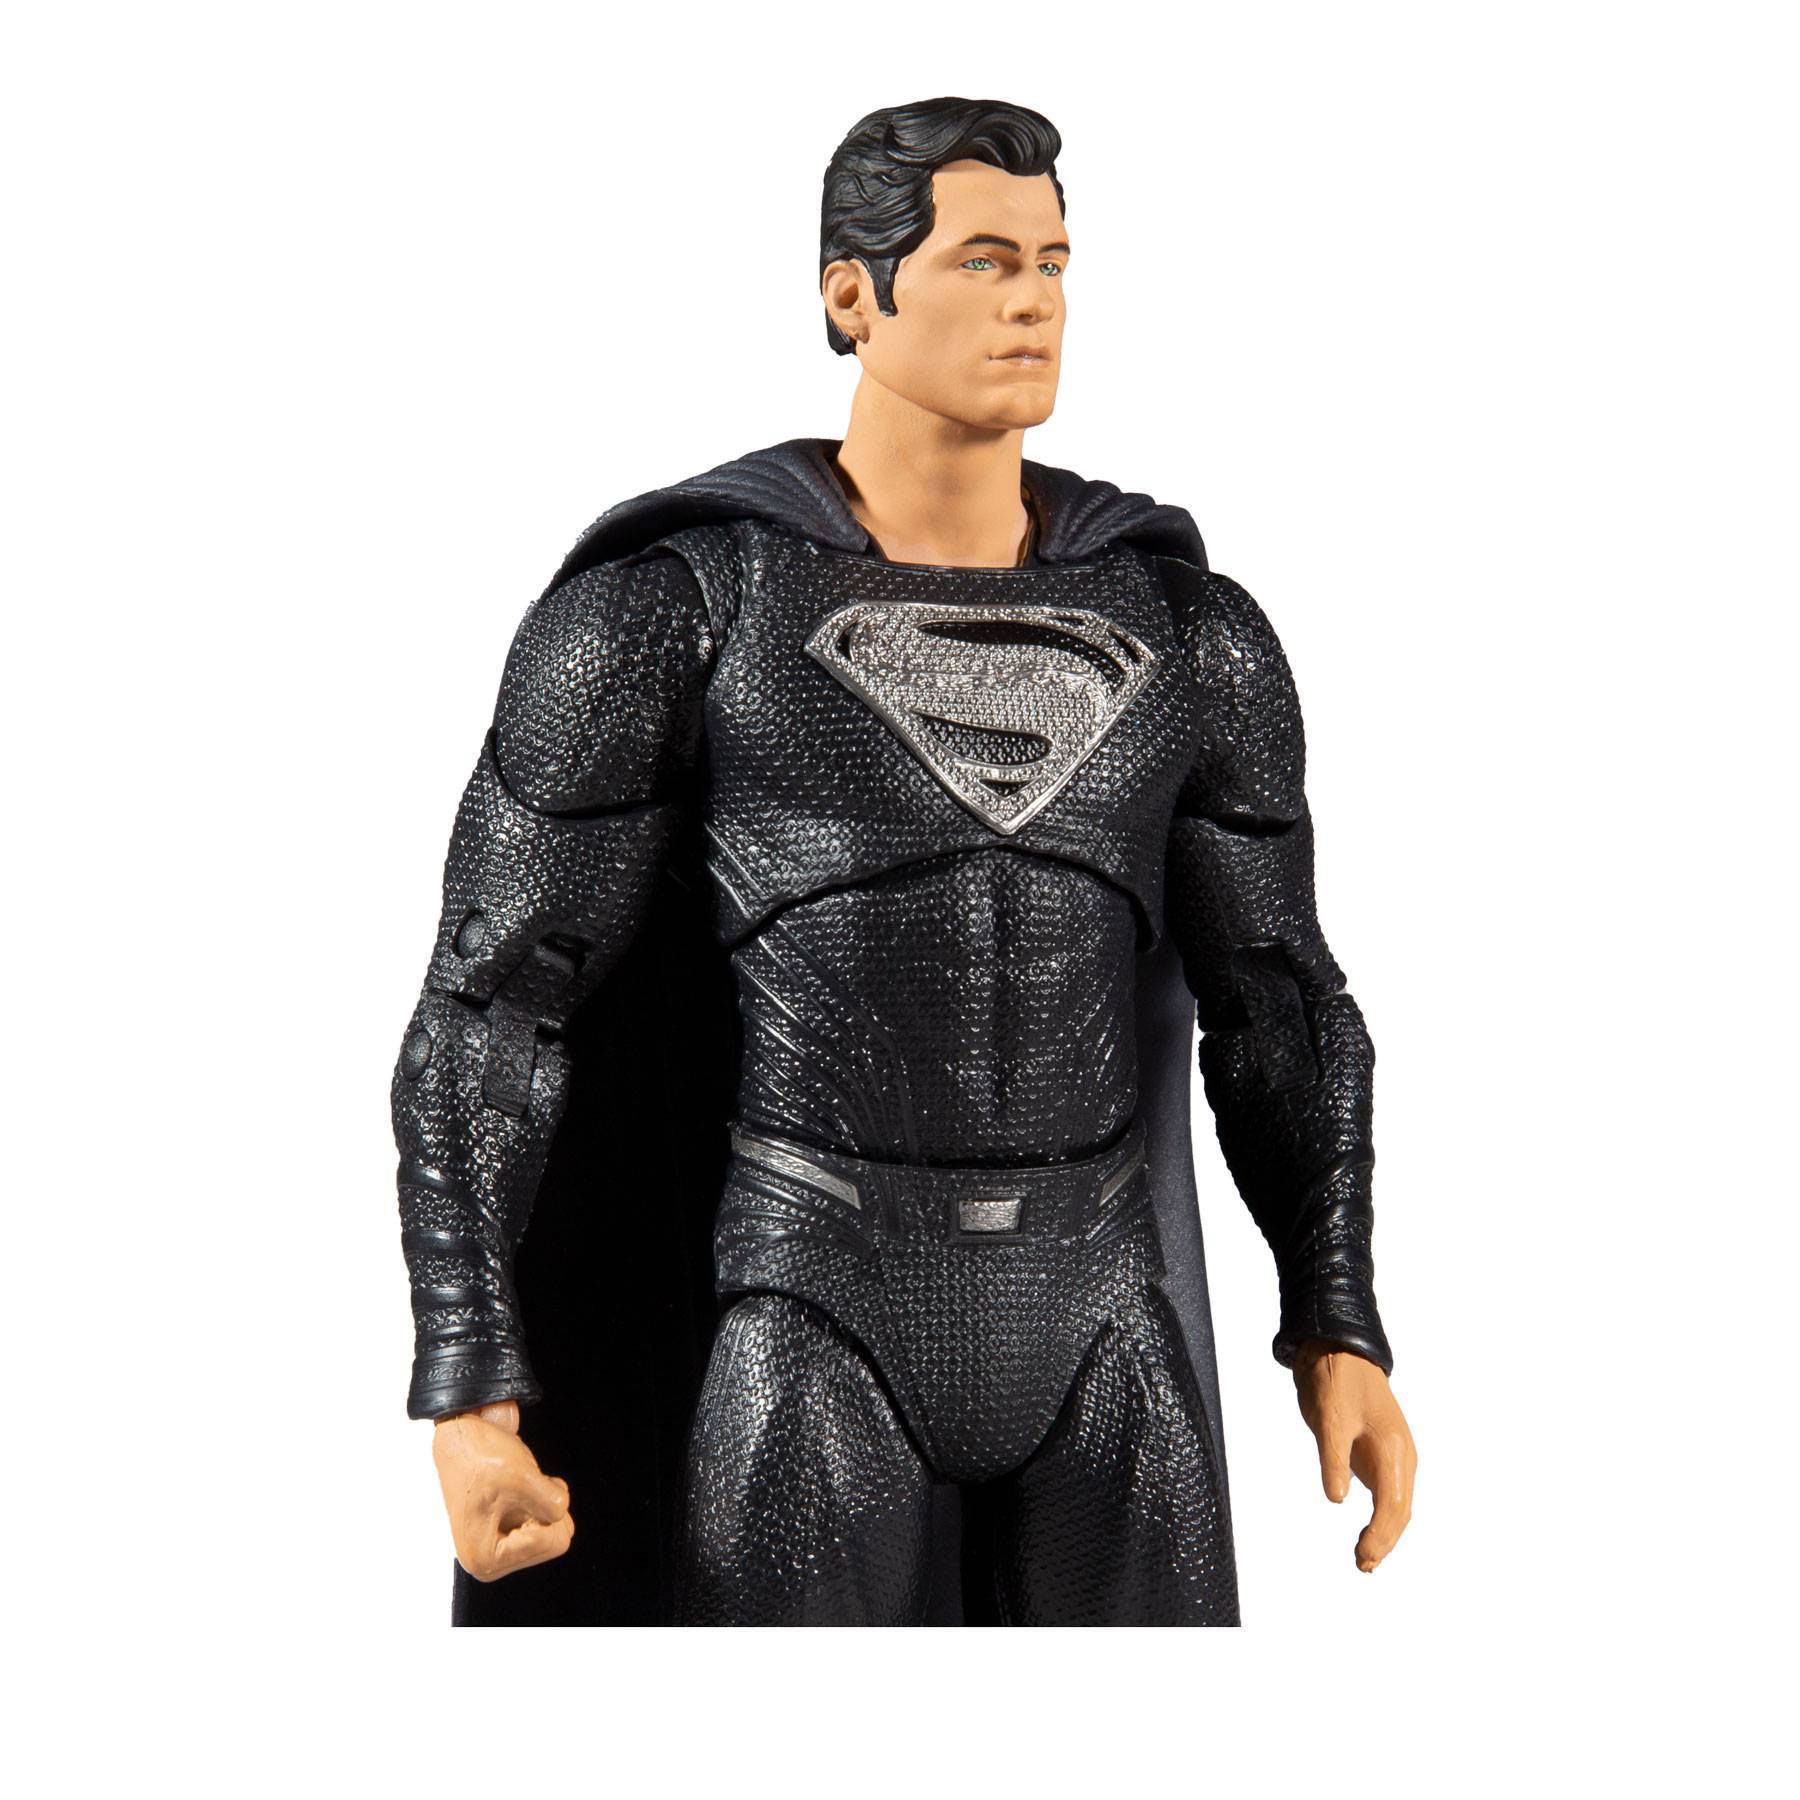 DC Justice League Movie Actionfigur Superman 18 cm MCF15095-7 787926150957